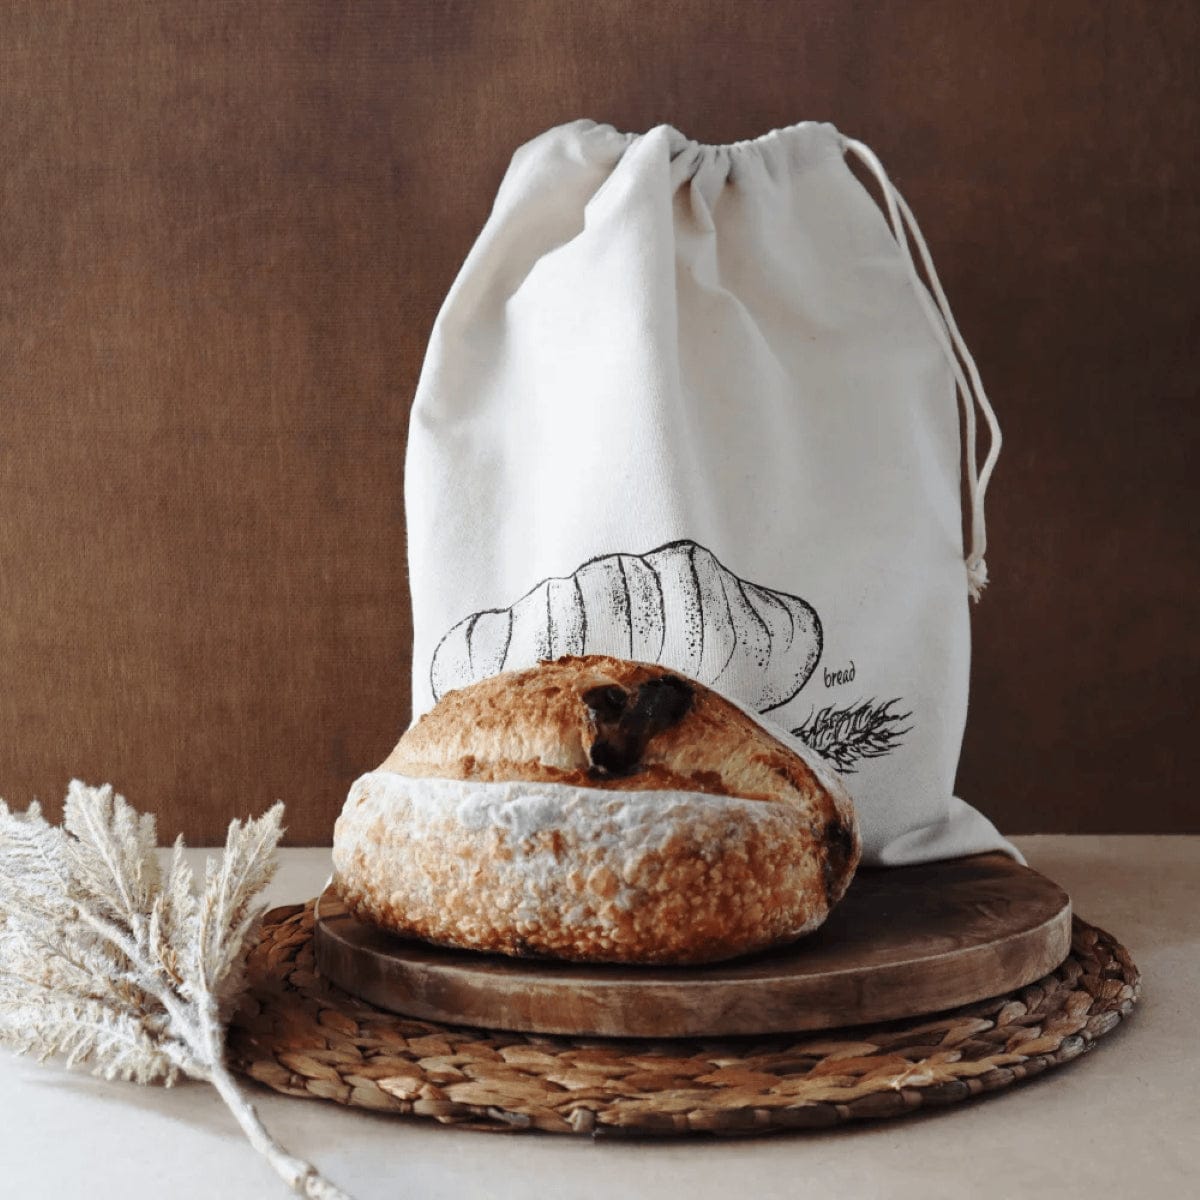 White Magic Eco Basics Bread Bag 1Pk